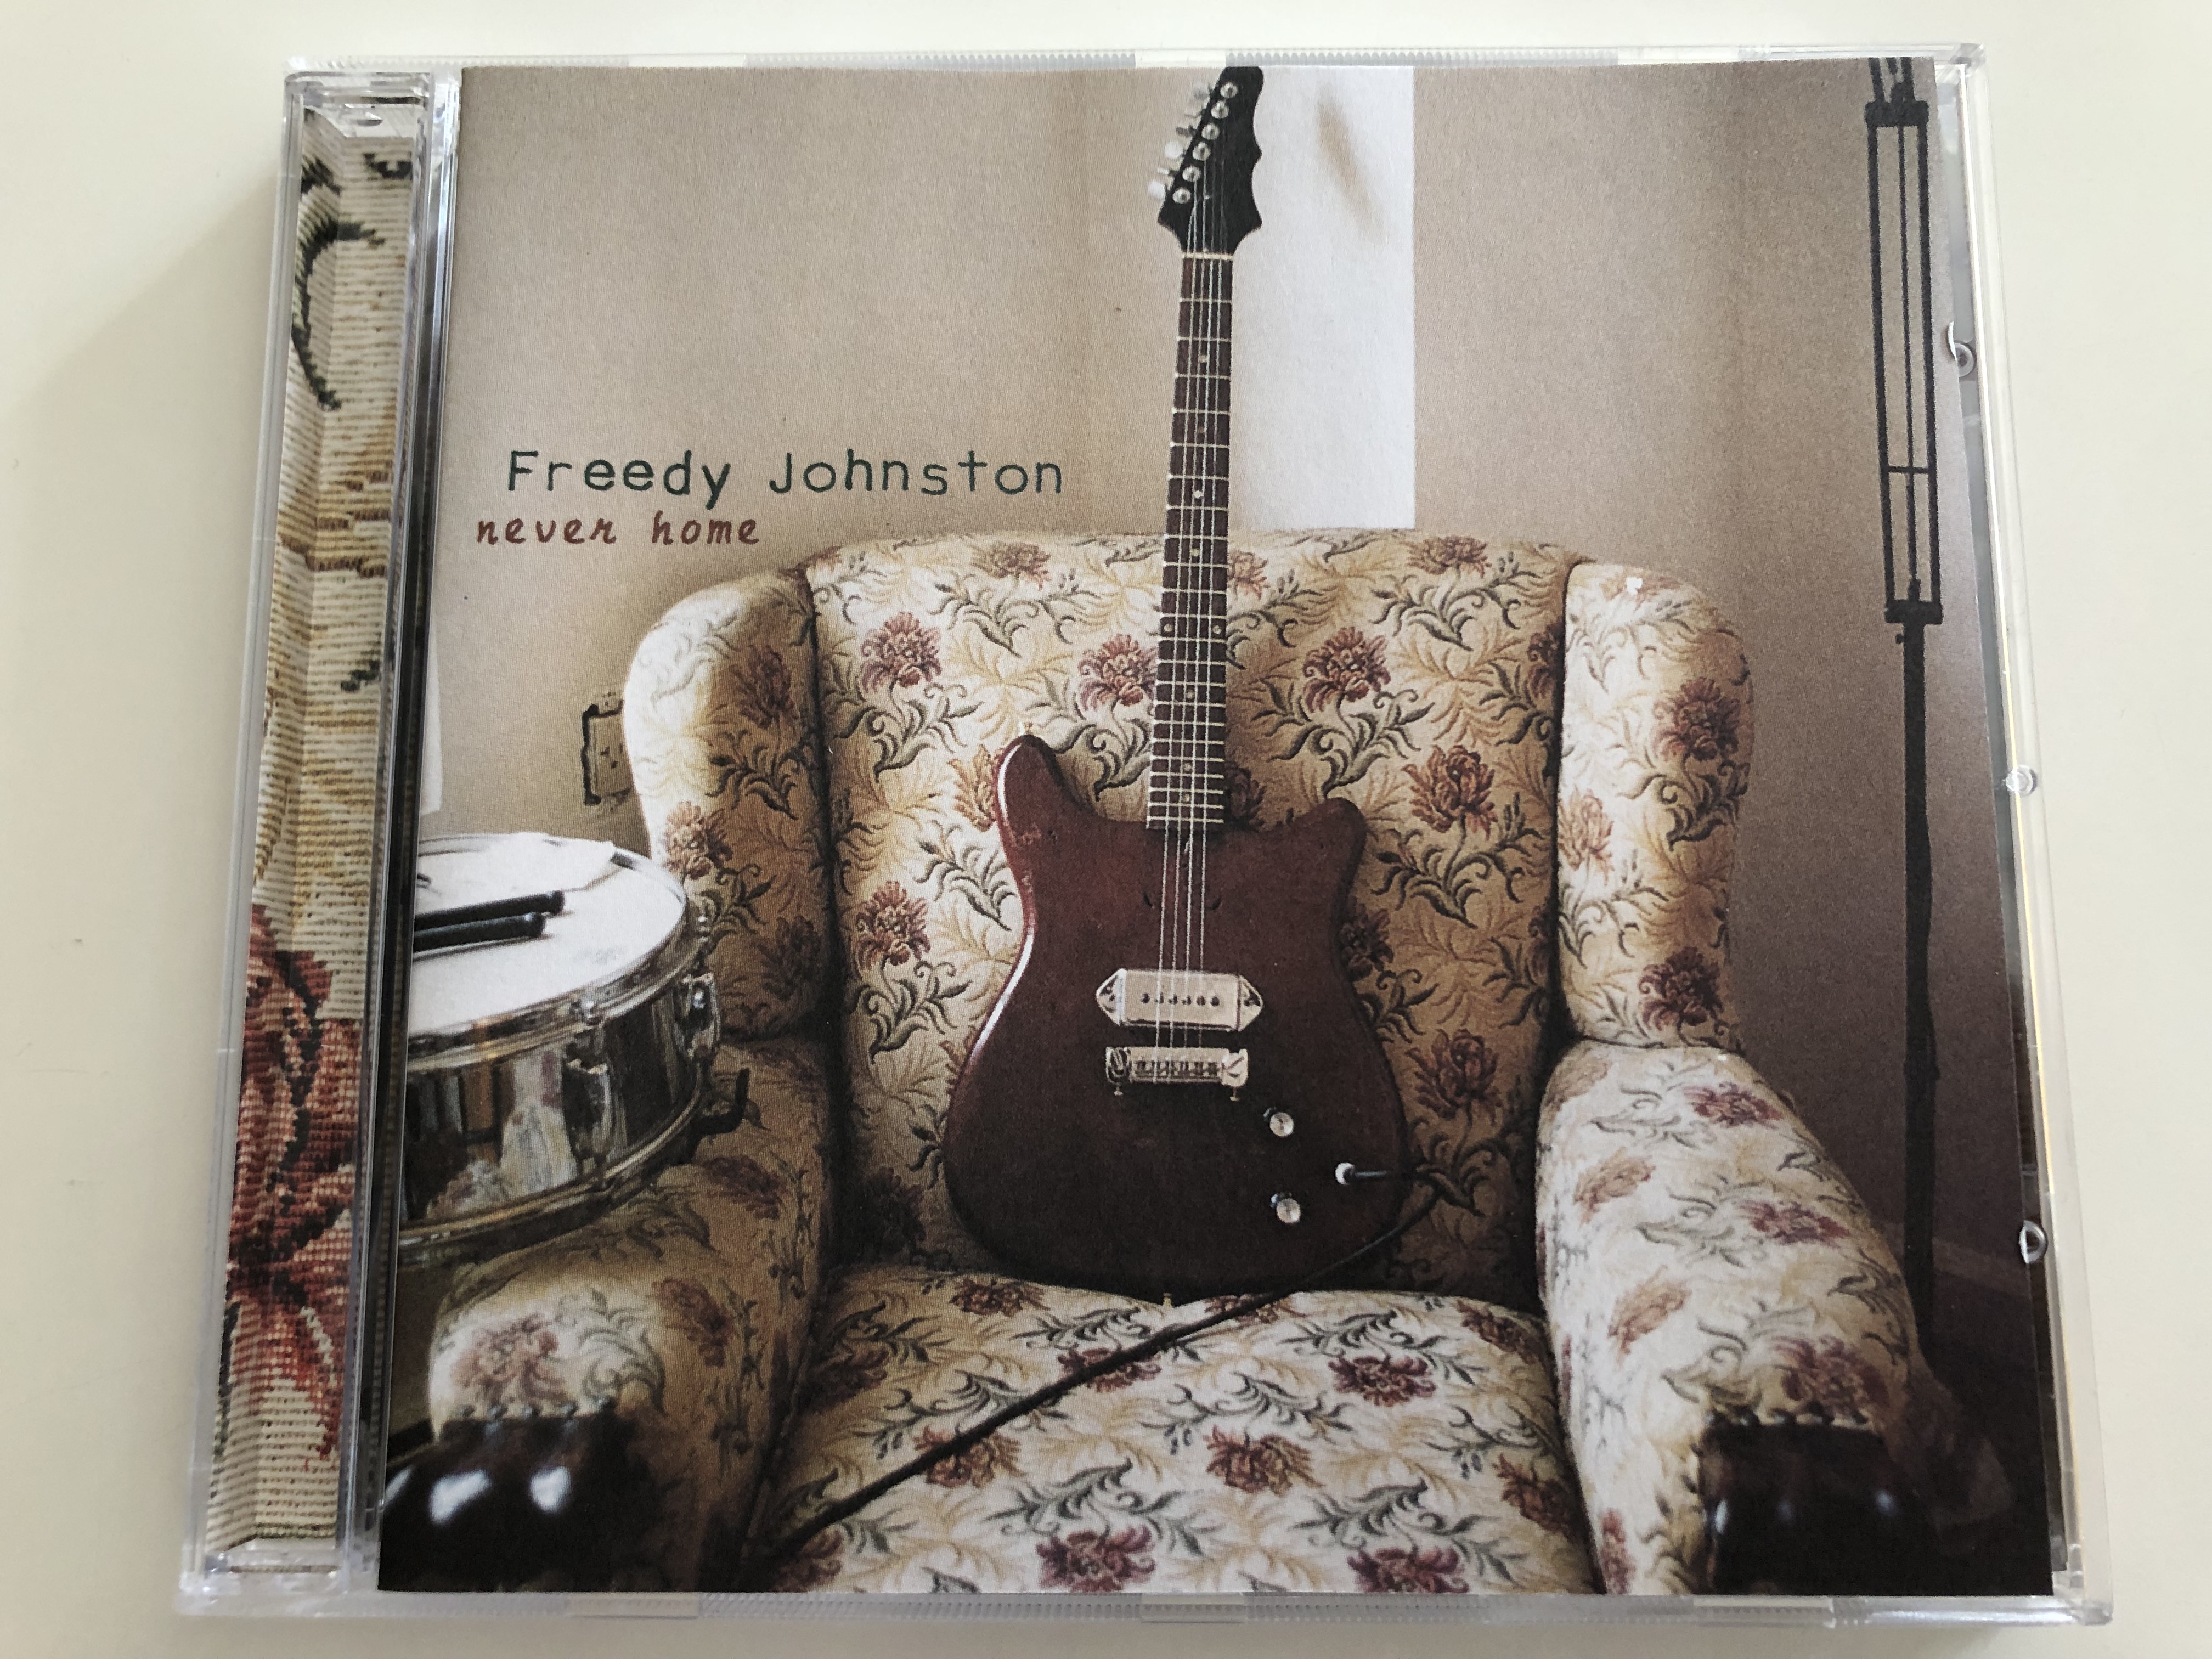 -freedy-johnston-never-home-audio-cd-1997-warner-music-ew-851-1-.jpg